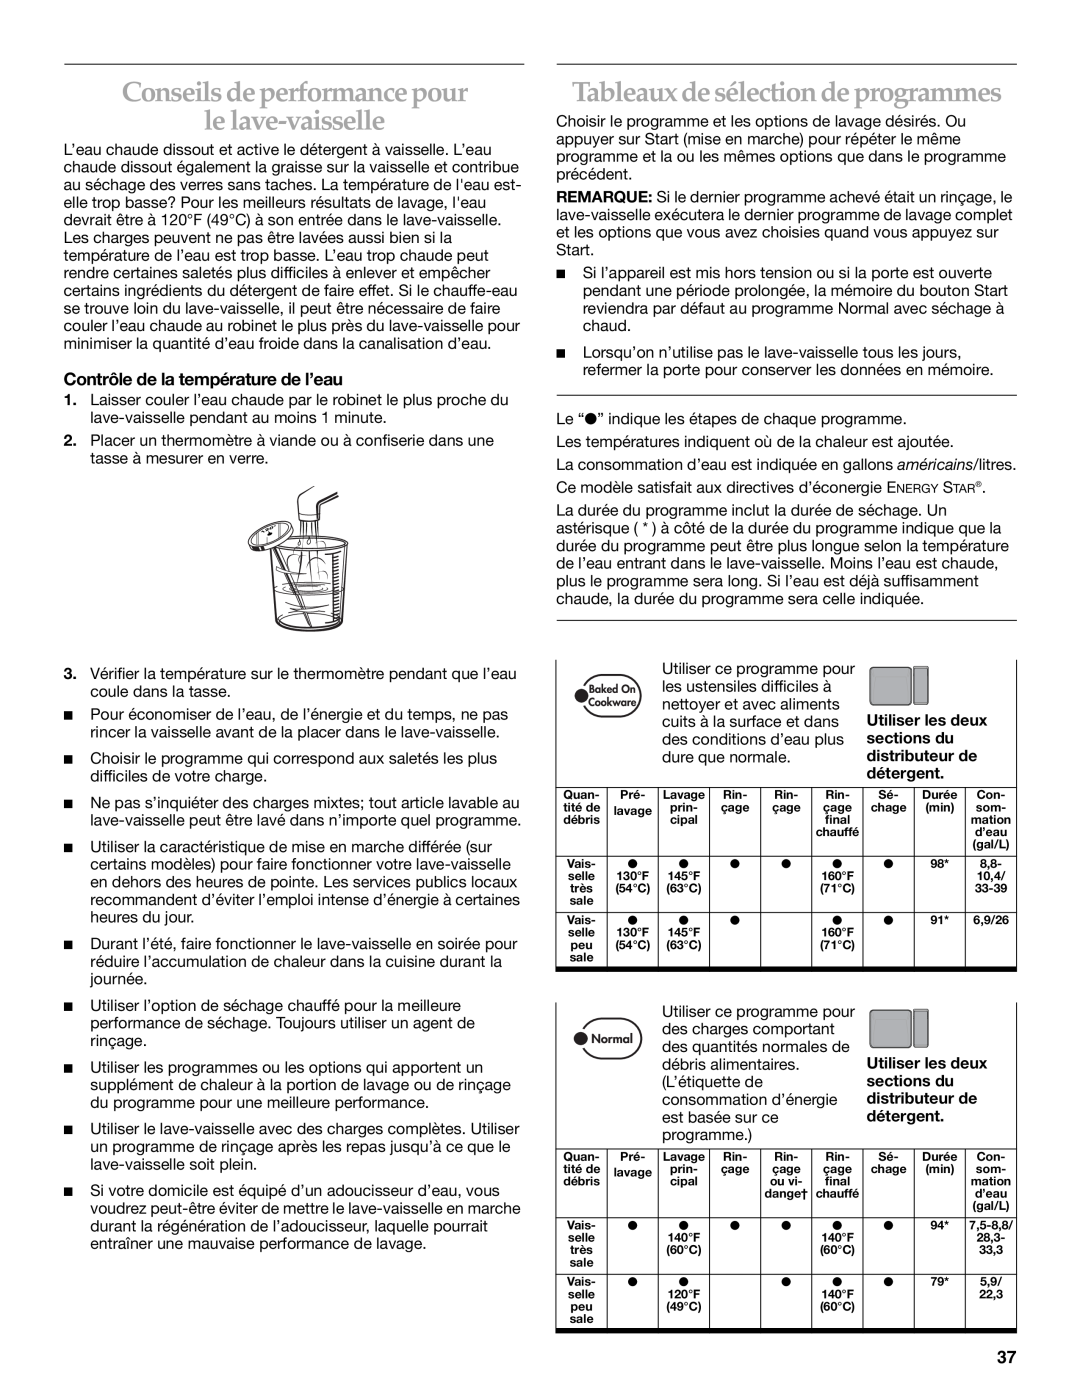 KitchenAid KUDS01DL manual Conseils de performance pour le lave-vaisselle, Tableaux de sélection de programmes 